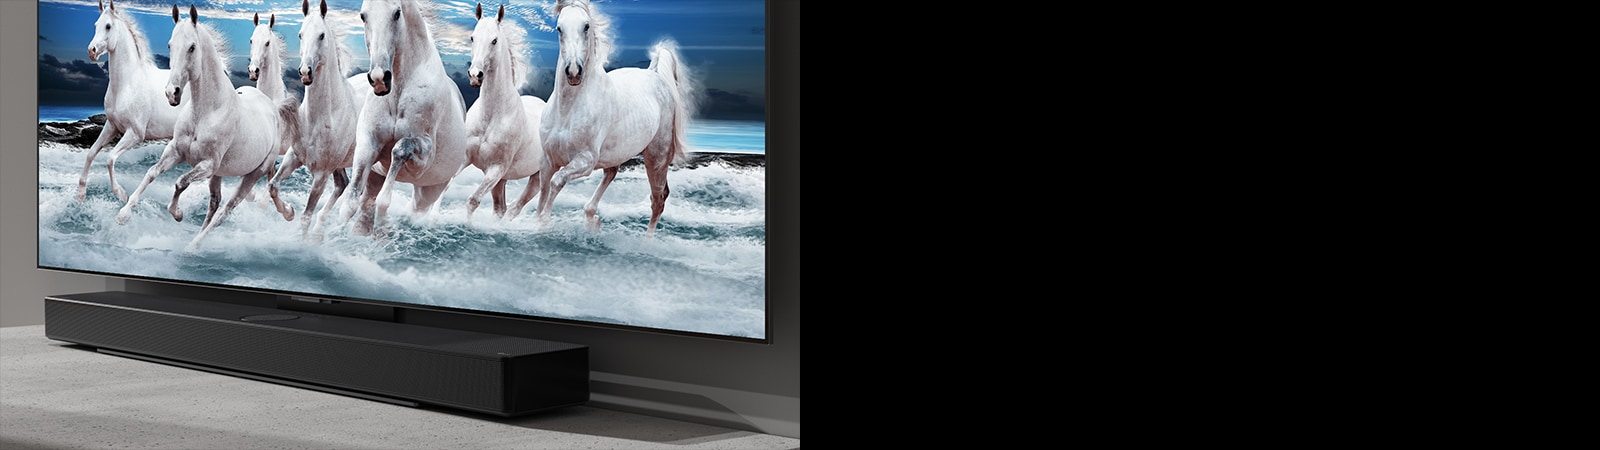 מקרן הקול והטלוויזיה ניצבים על שולחן לבן ובטלוויזיה מוצגים 7 סוסים לבנים.